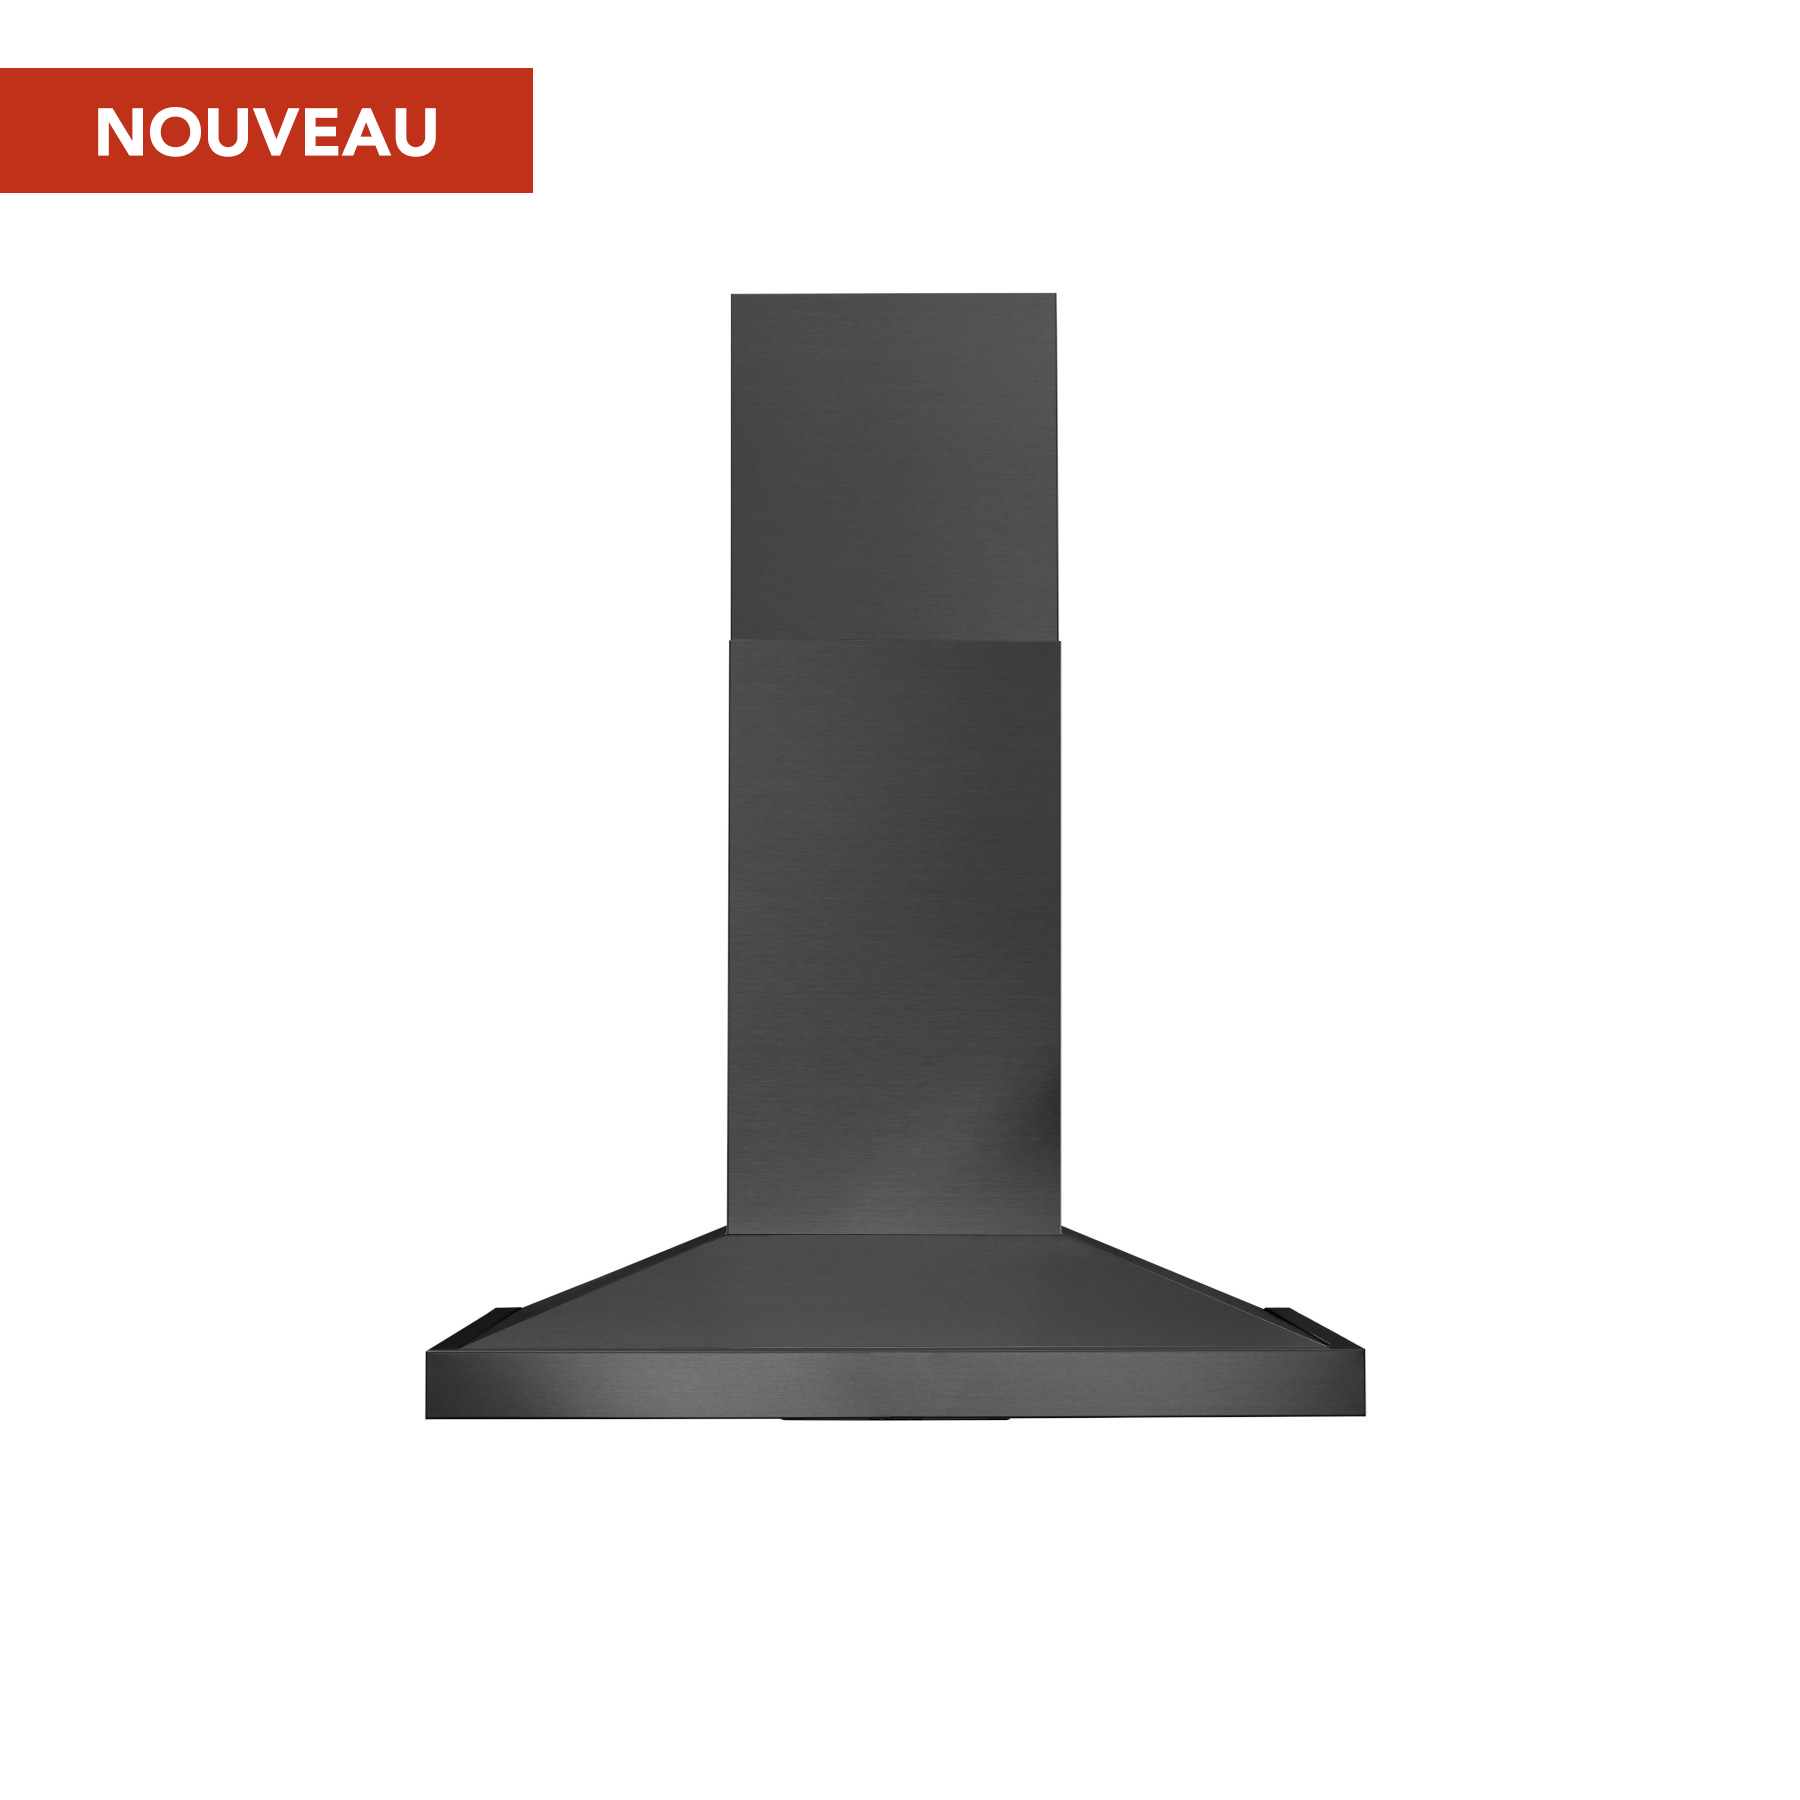 Hotte cheminée pyramidale Broan®, 30 po avec Code Ready™ Technology, puissance maximale 650 PCM, acier inoxydable  noir